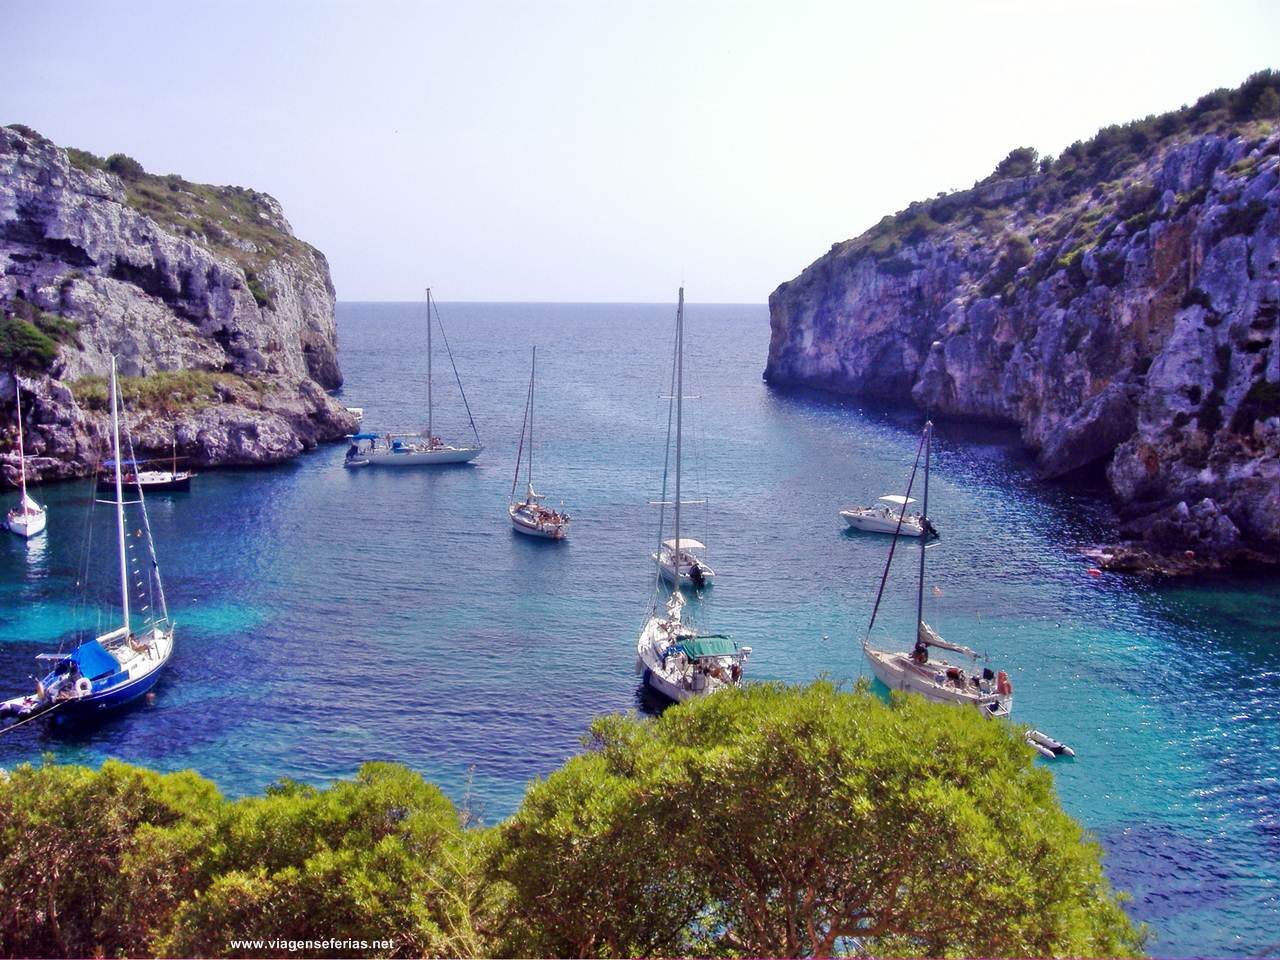 Vista da enseada de Cales Coves na ilha de Menorca